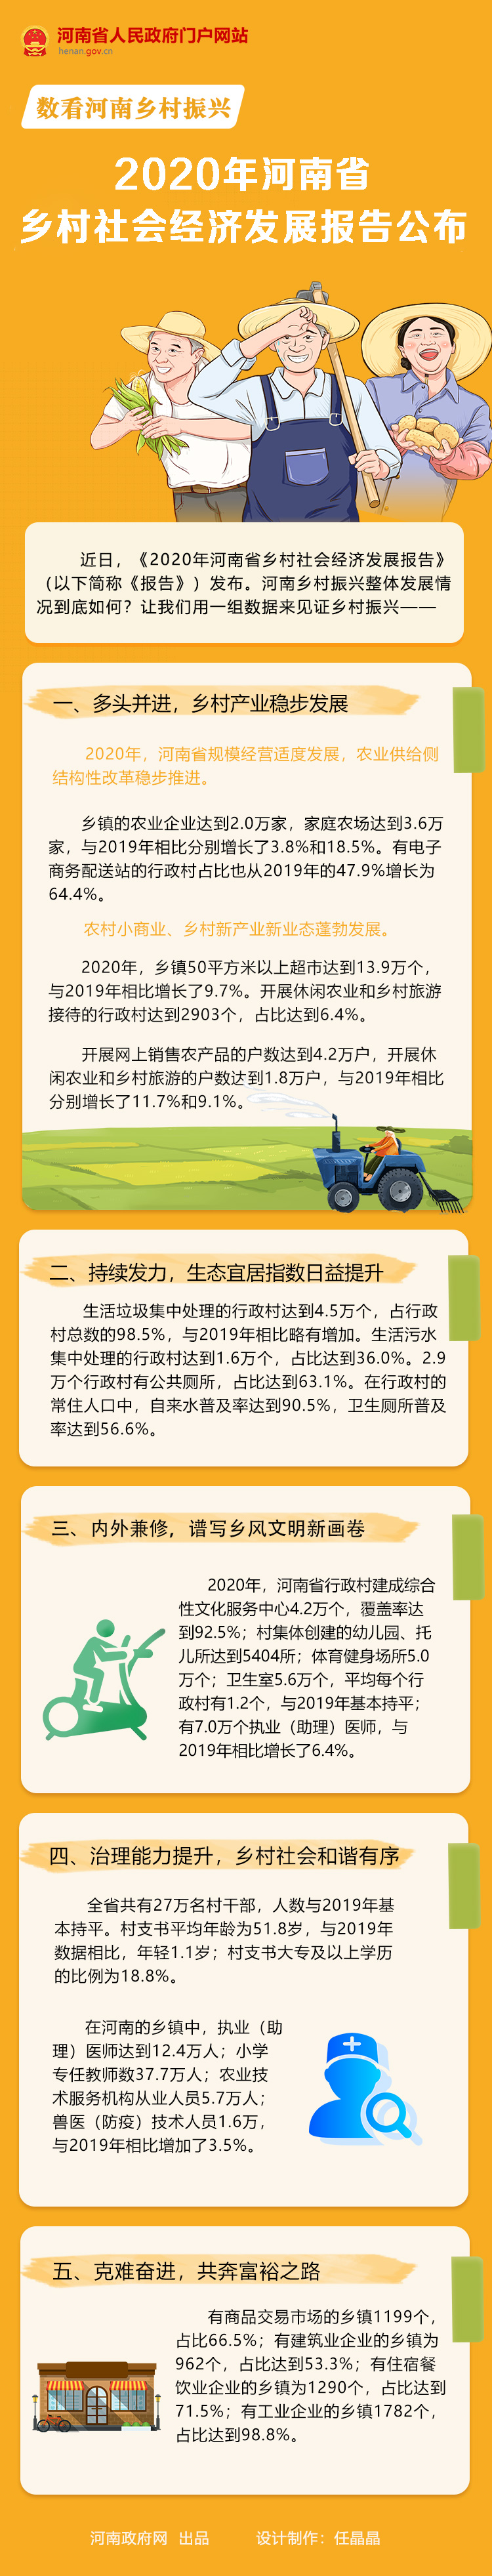 图解丨2020年河南省乡村社会经济发展报告出炉